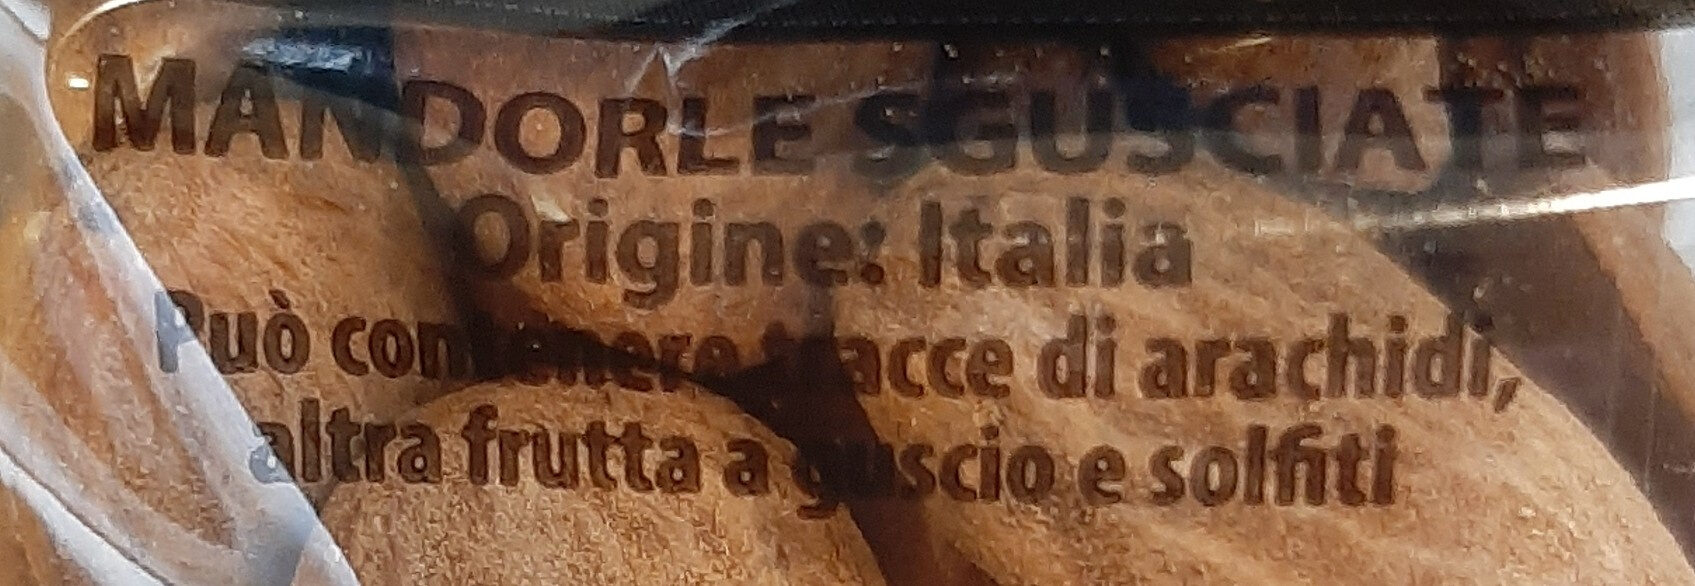 Mandorle di Sicilia - Ingredients - it